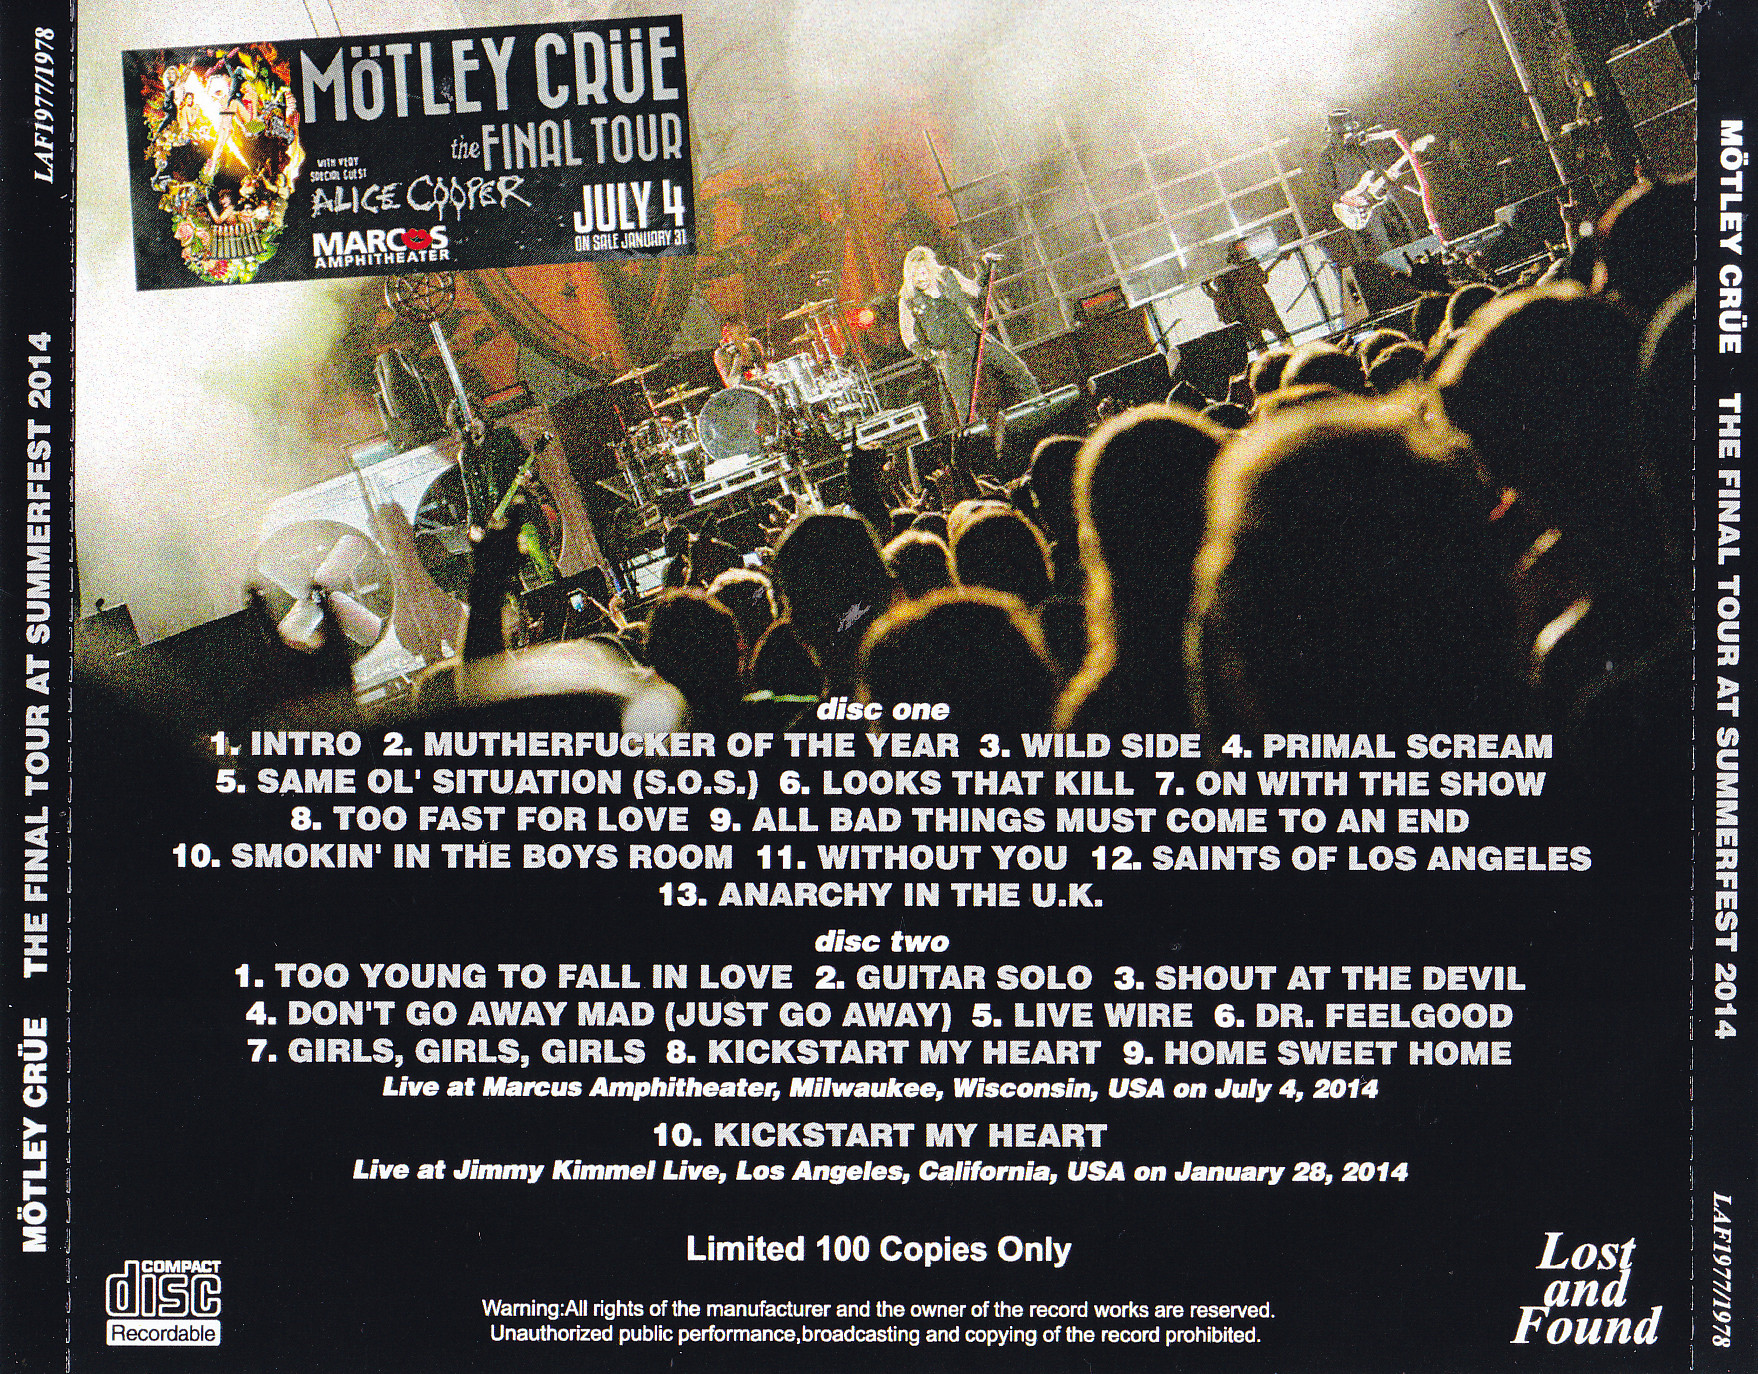 Motley Crue / The Final Tour At Summerfest 2014 / 2CDR – GiGinJapan